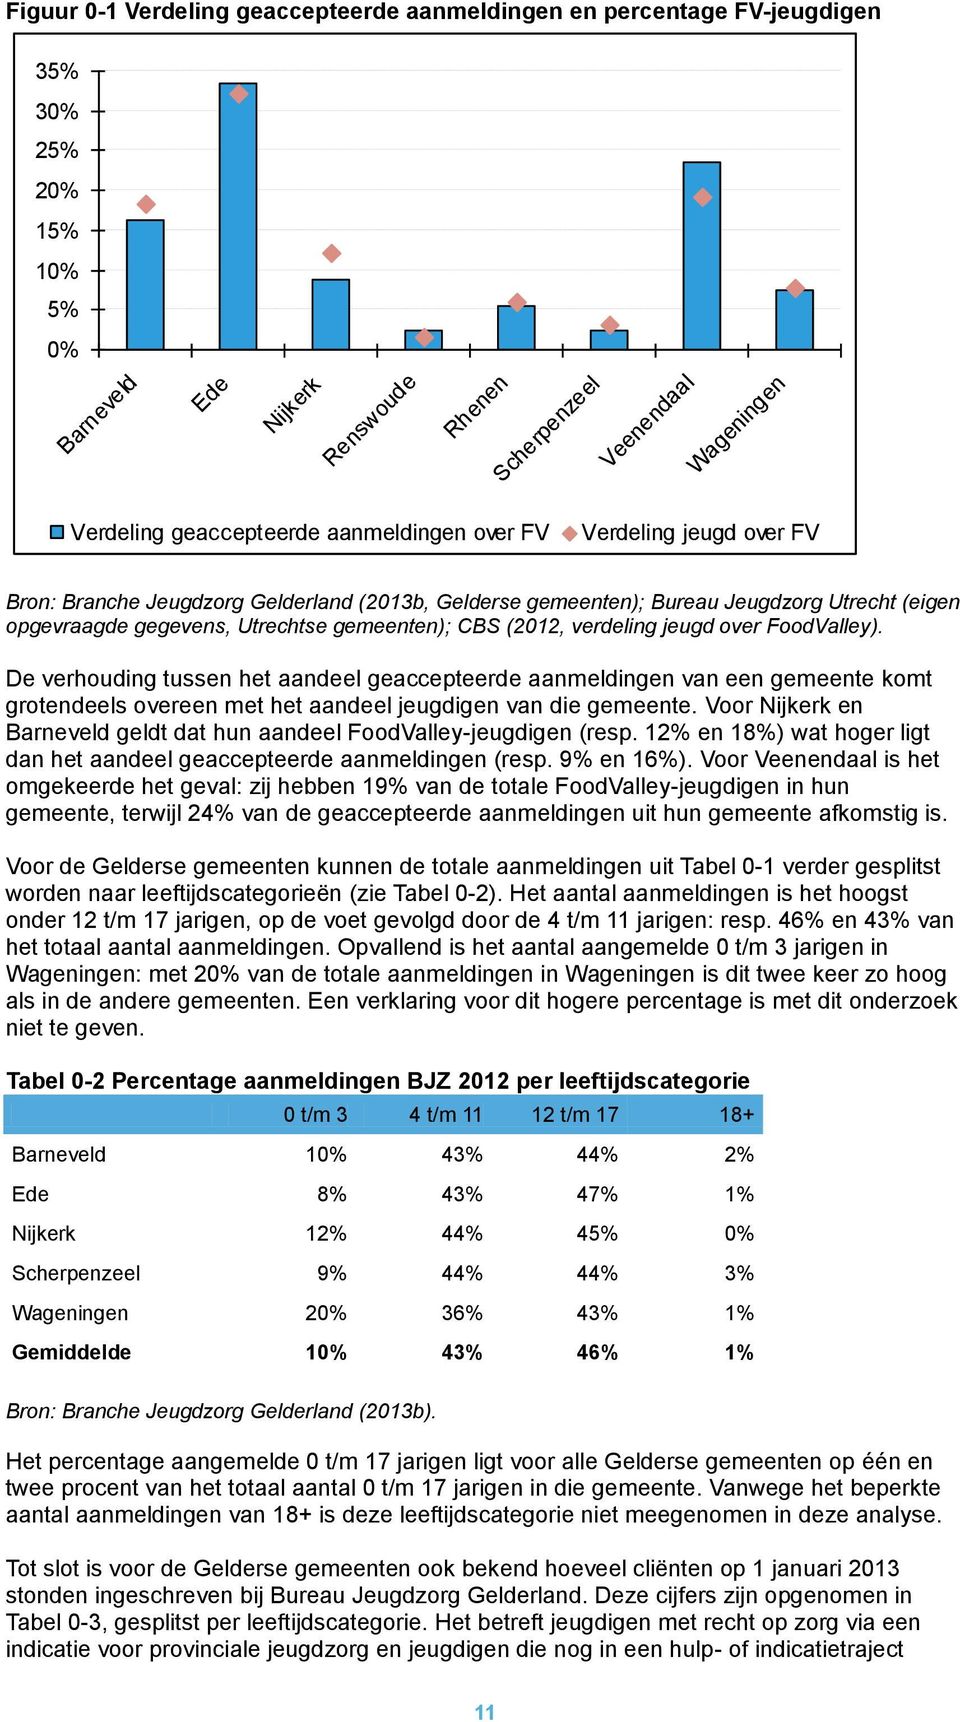 CBS (2012, verdeling jeugd over FoodValley). De verhouding tussen het aandeel geaccepteerde aanmeldingen van een gemeente komt grotendeels overeen met het aandeel jeugdigen van die gemeente.